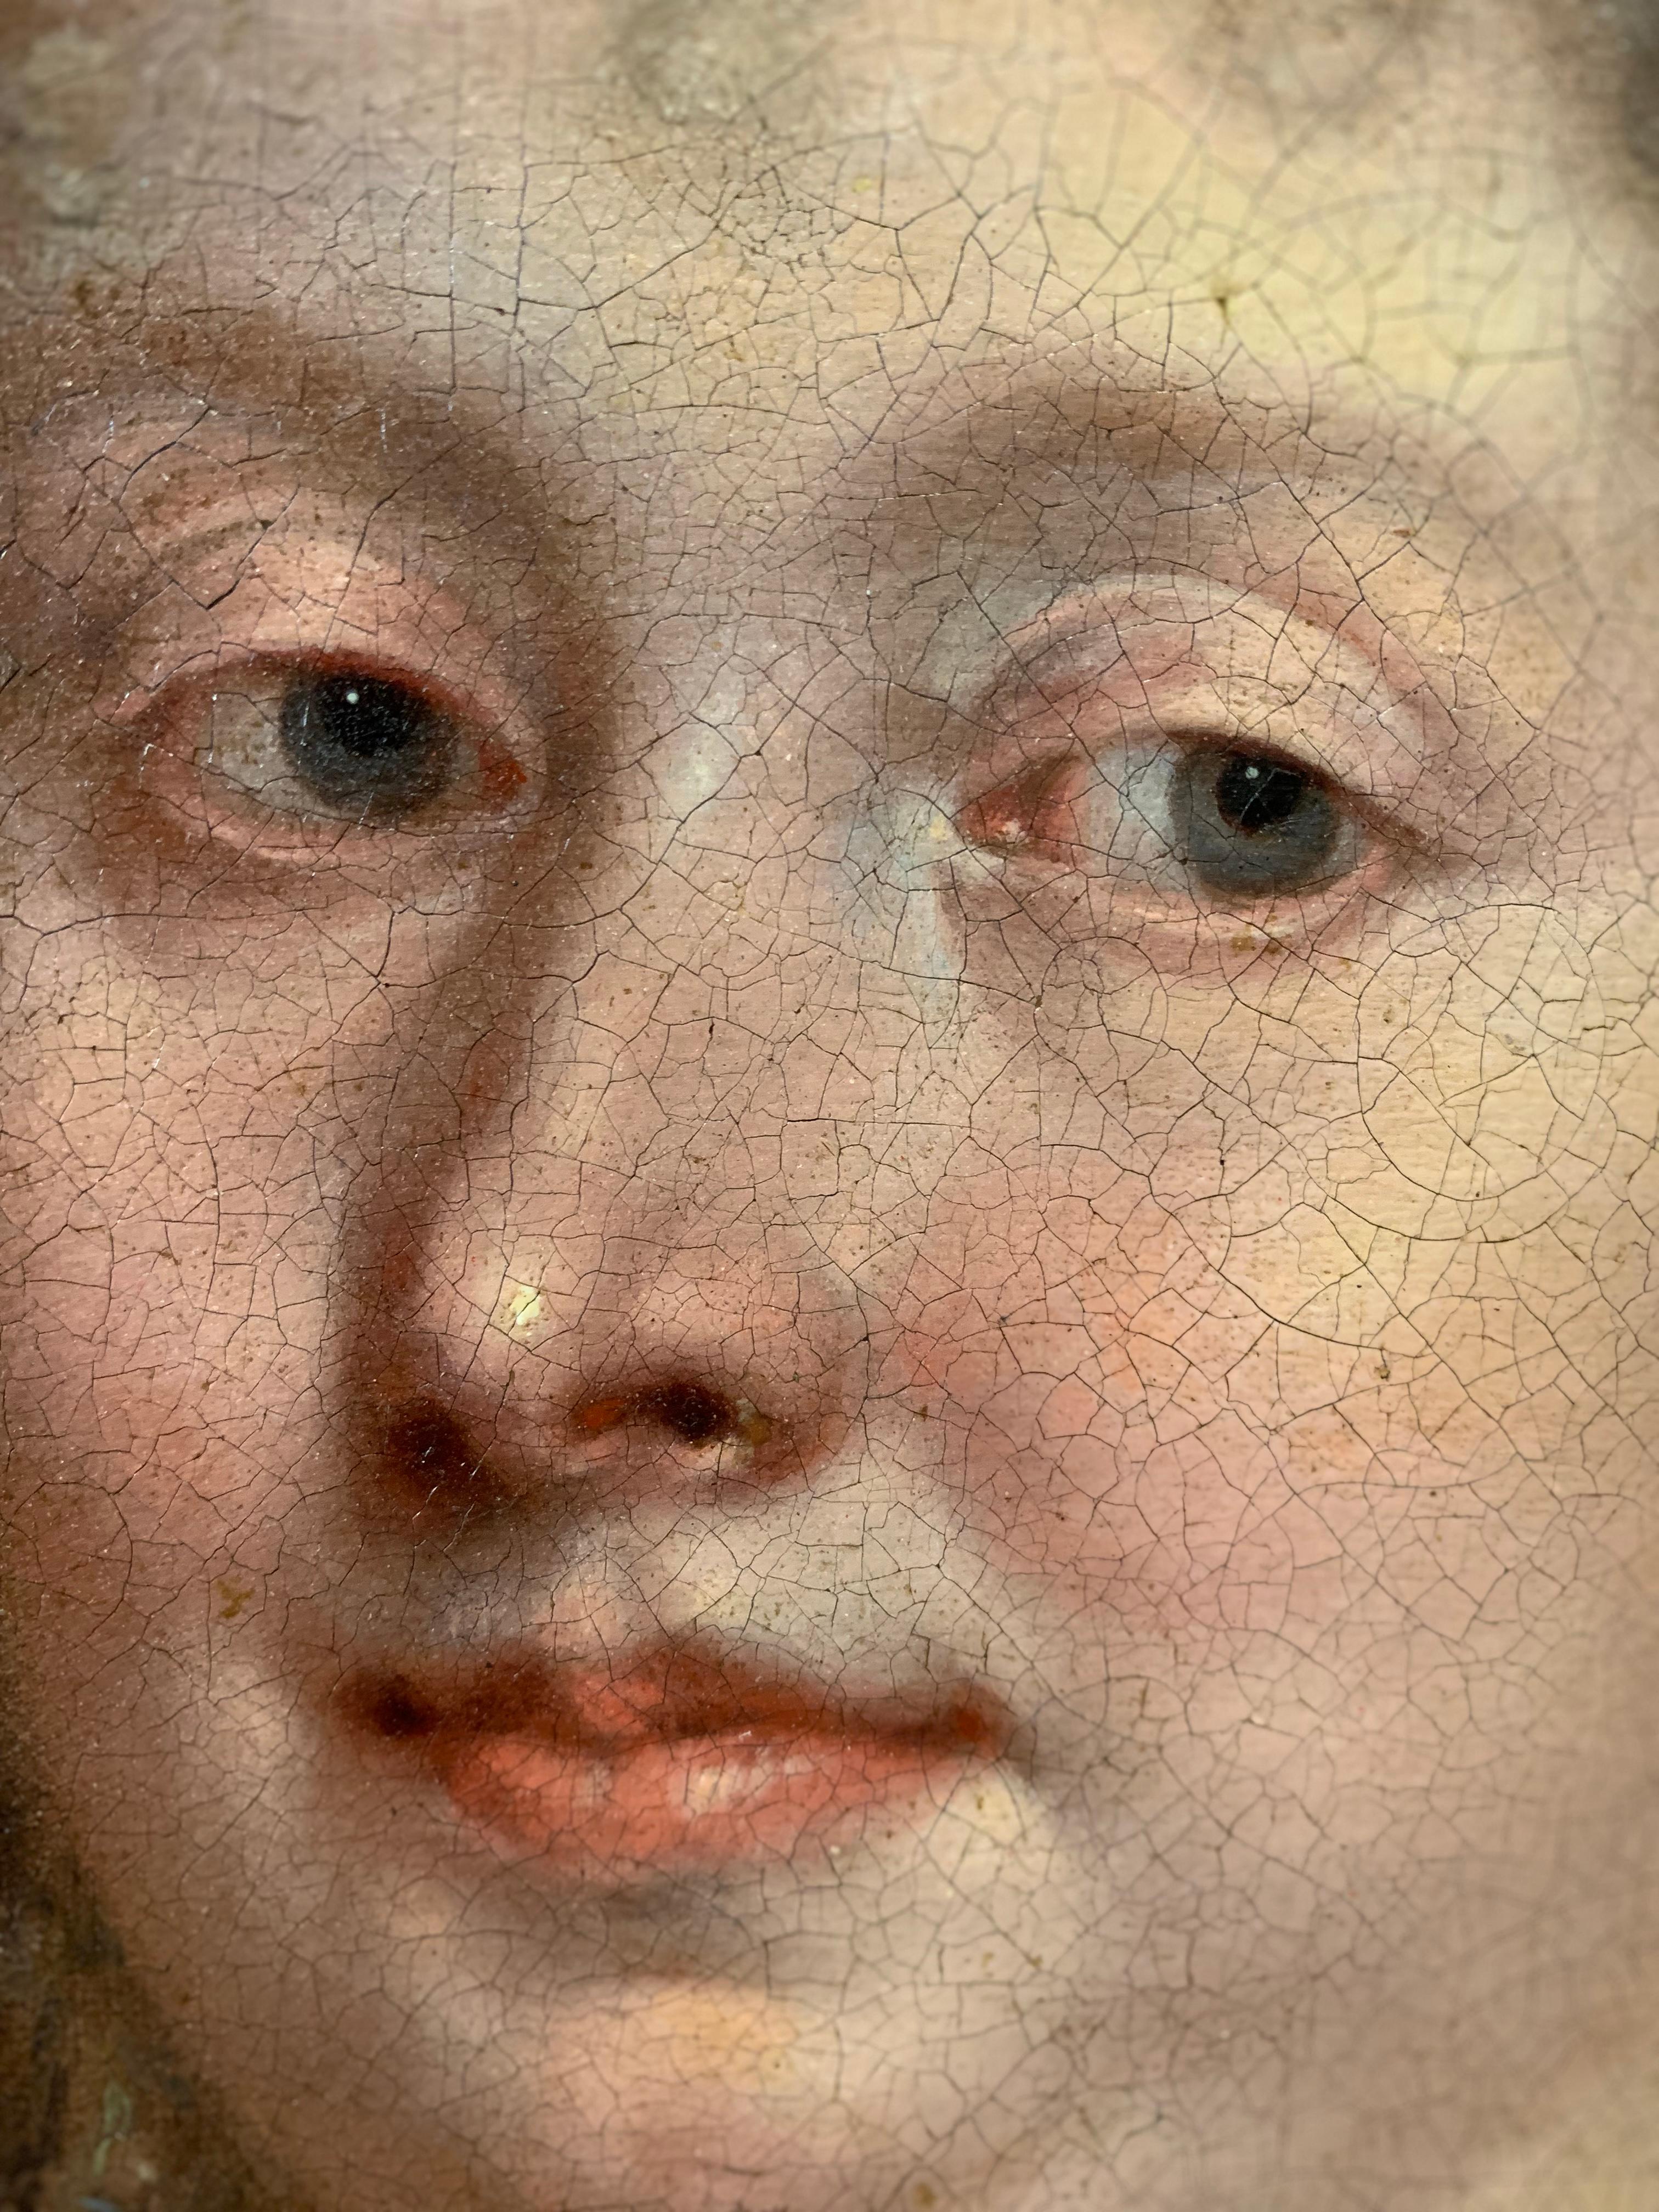 Porträt einer Dame .
Louis Ferdinand Elle der Jüngere. (Paris, 1612-1689), zugeschrieben. 
 
Um 1680.
Öl auf Leinwand, auf Karton aufgezogen.
In vergoldetem Holzrahmen aus dem 19. Jahrhundert. 

Kürzlich erschien in unserer Galerie ein Frauenporträt